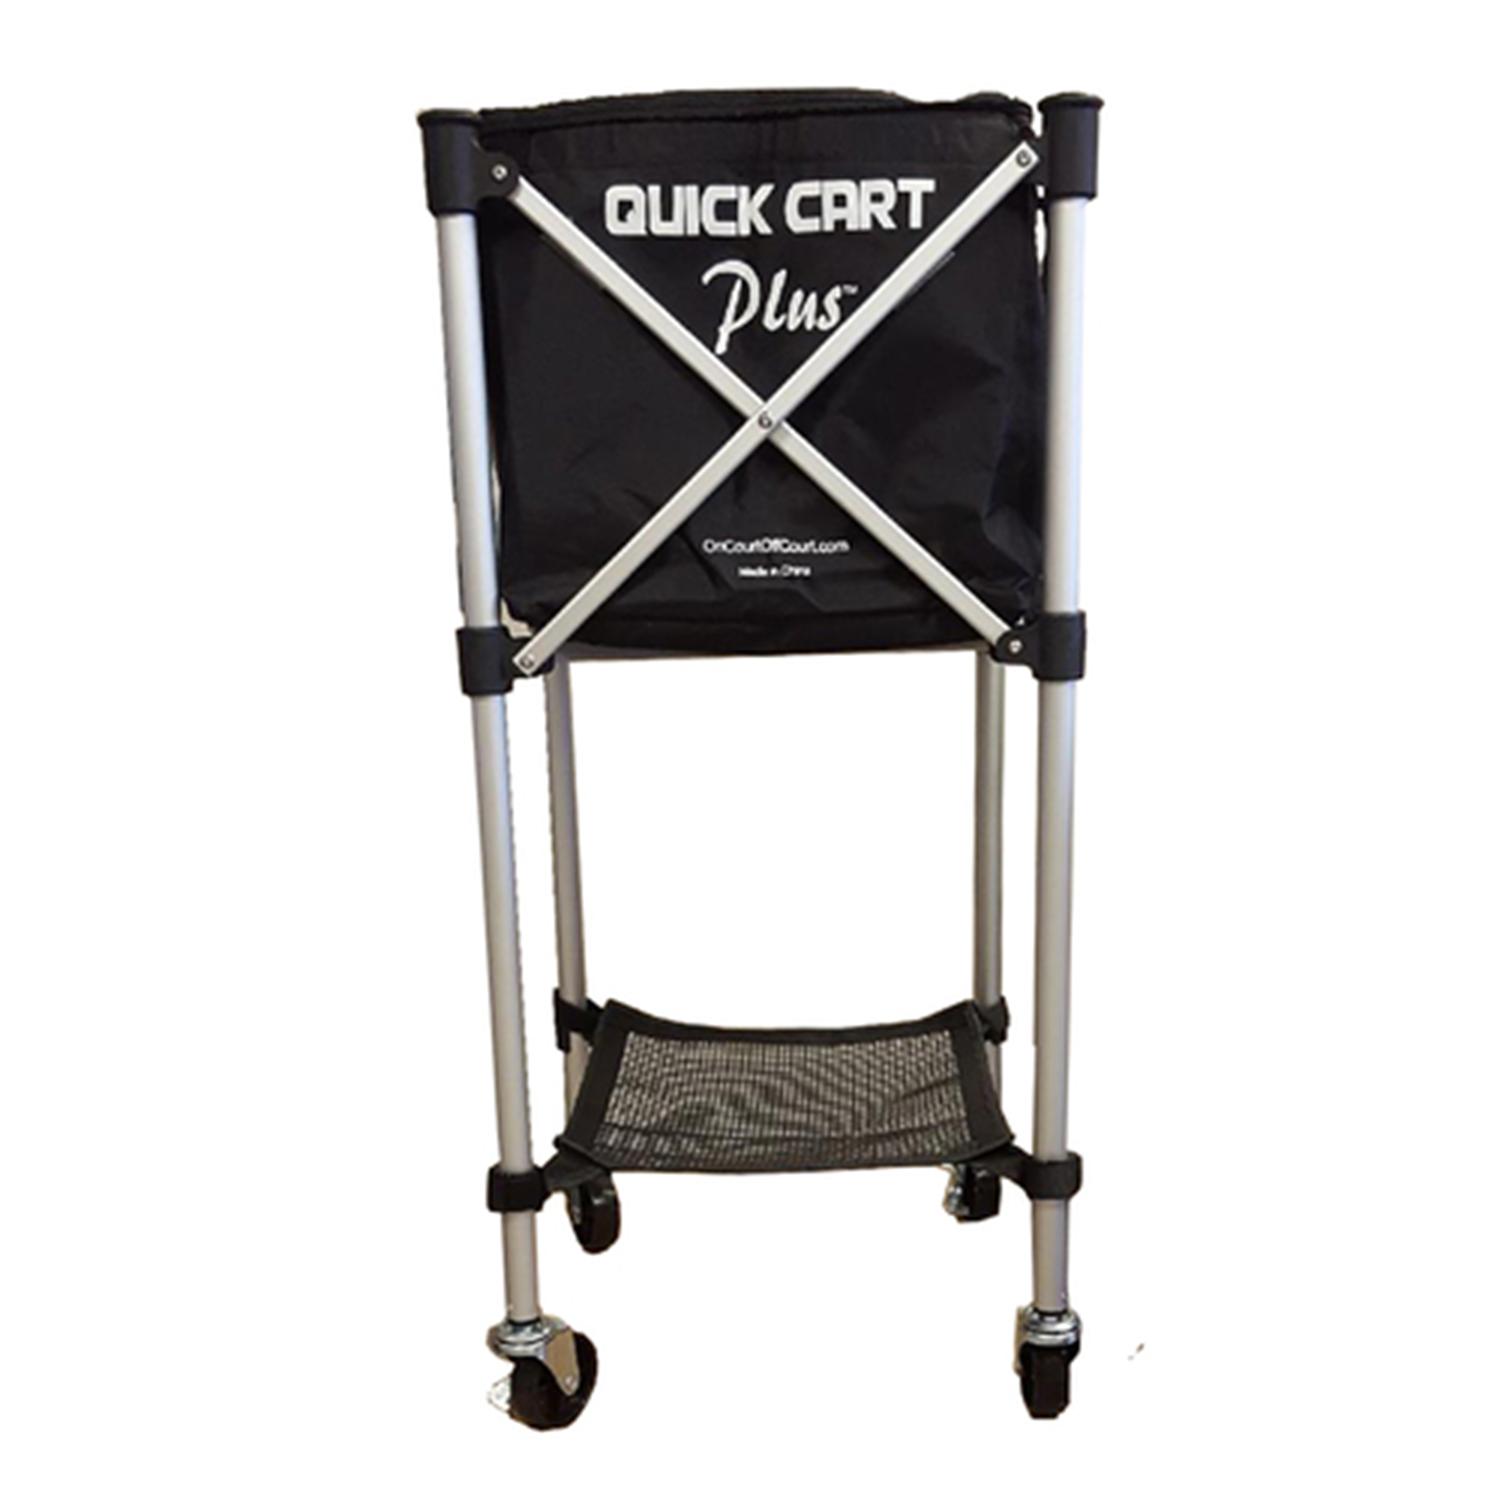 Oncourt Offcourt Quick Cart Plus Canvas 150 Tennis Ball Cart